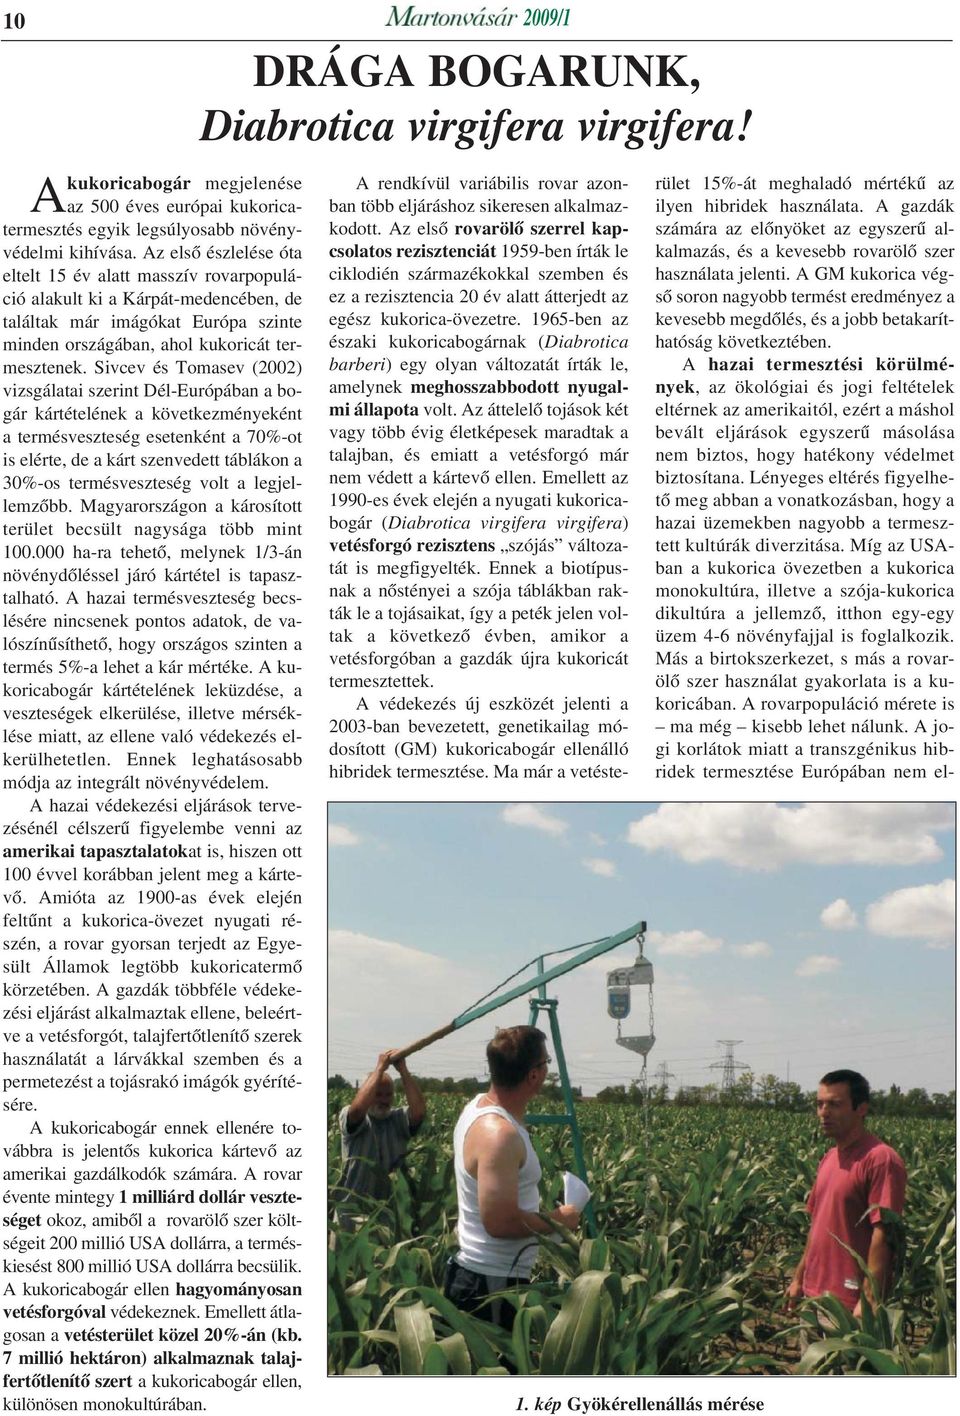 Sivcev és Tomasev (2002) vizsgálatai szerint Dél-Európában a bogár kártételének a következményeként a termésveszteség esetenként a 70%-ot is elérte, de a kárt szenvedett táblákon a 30%-os